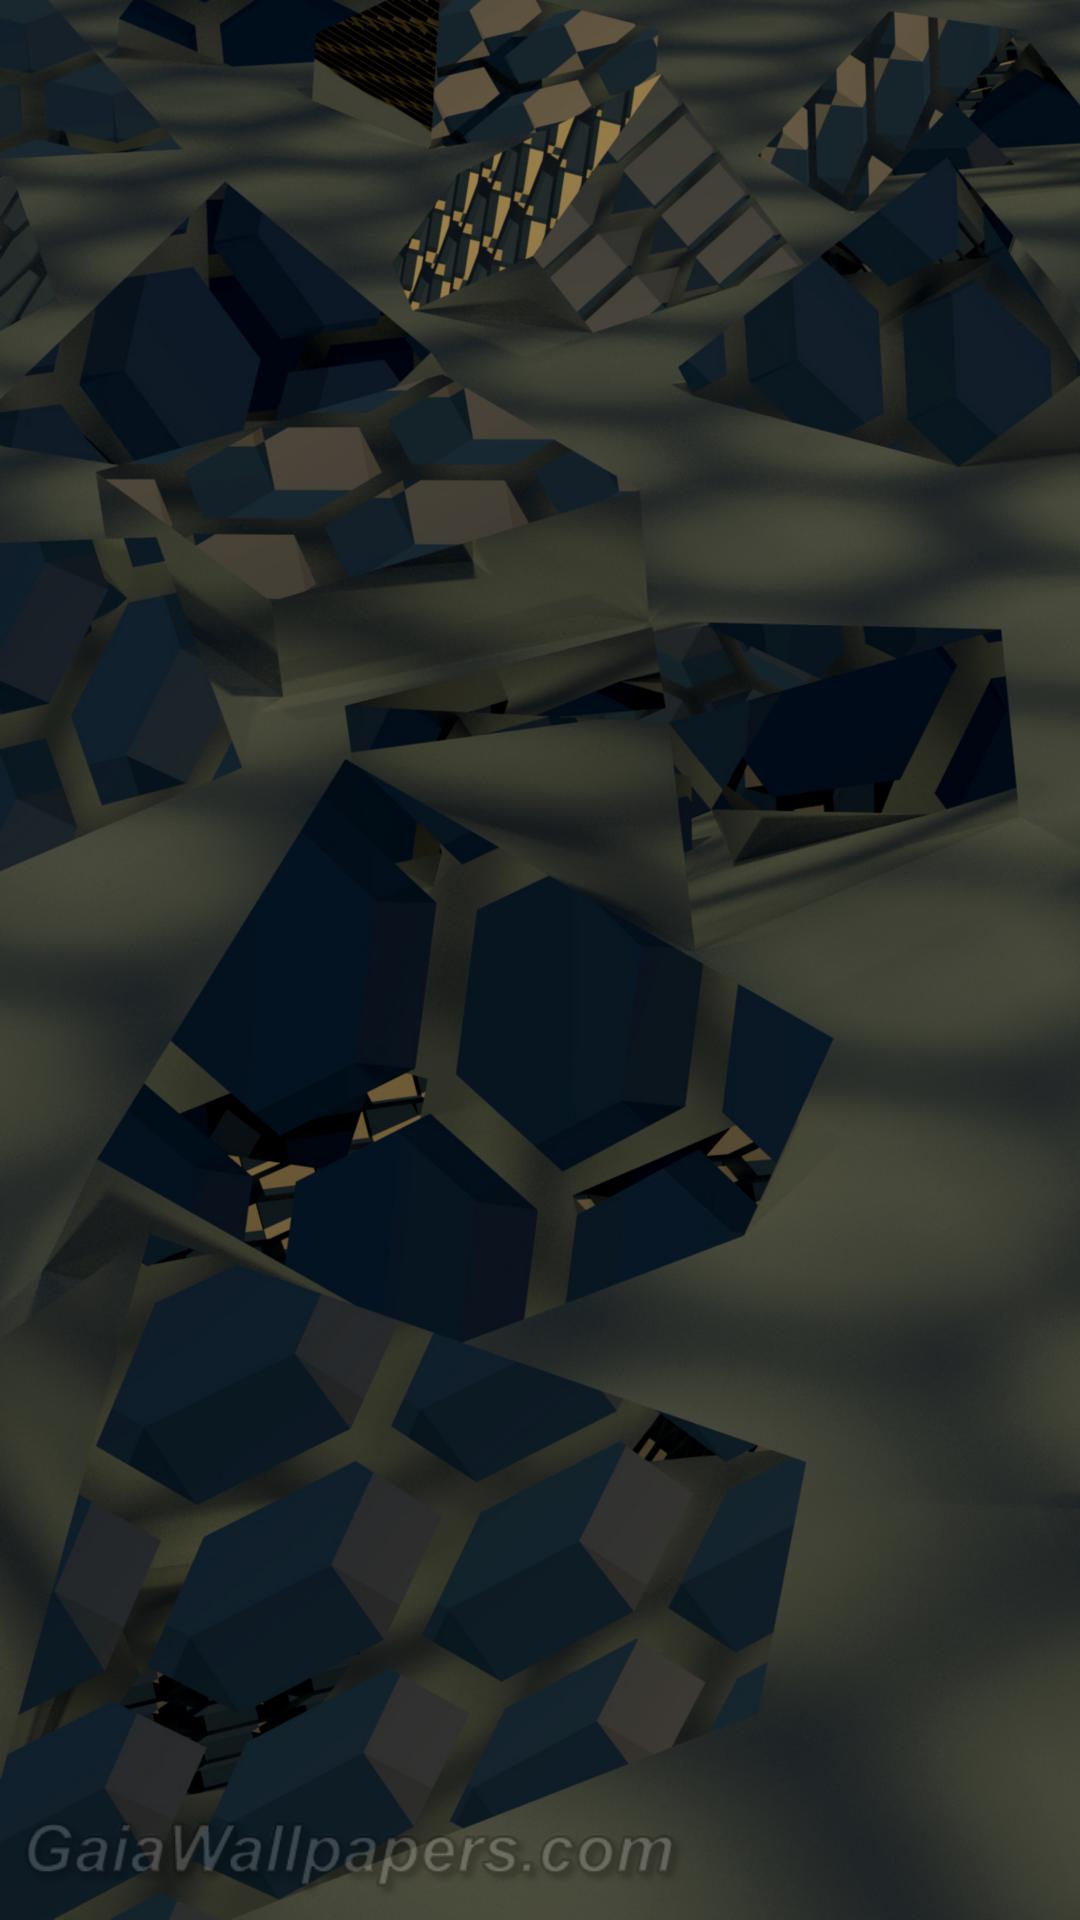 Structure du ciel reflétant dans les cubes - Fonds d'écran gratuits